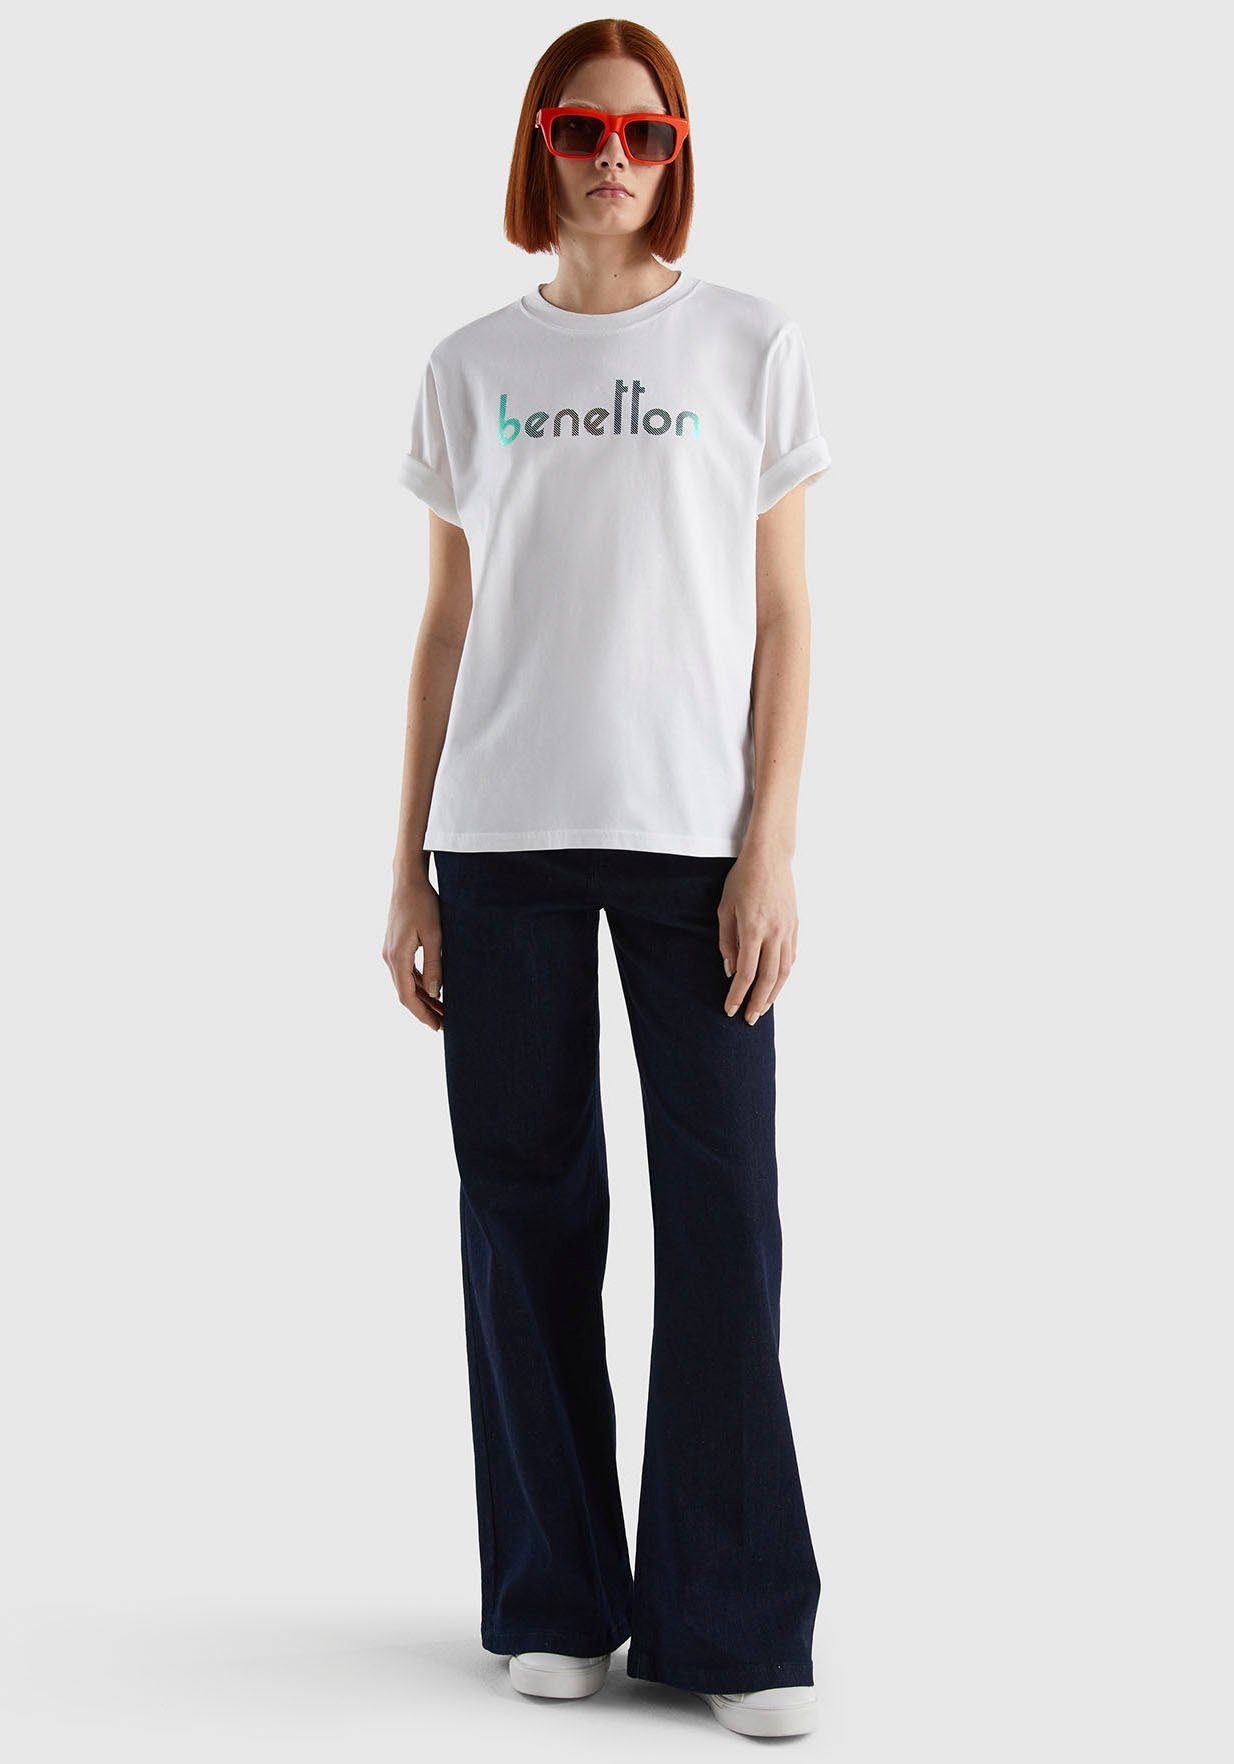 Brust of Logodruck T-Shirt mit Benetton auf der Colors weiß United